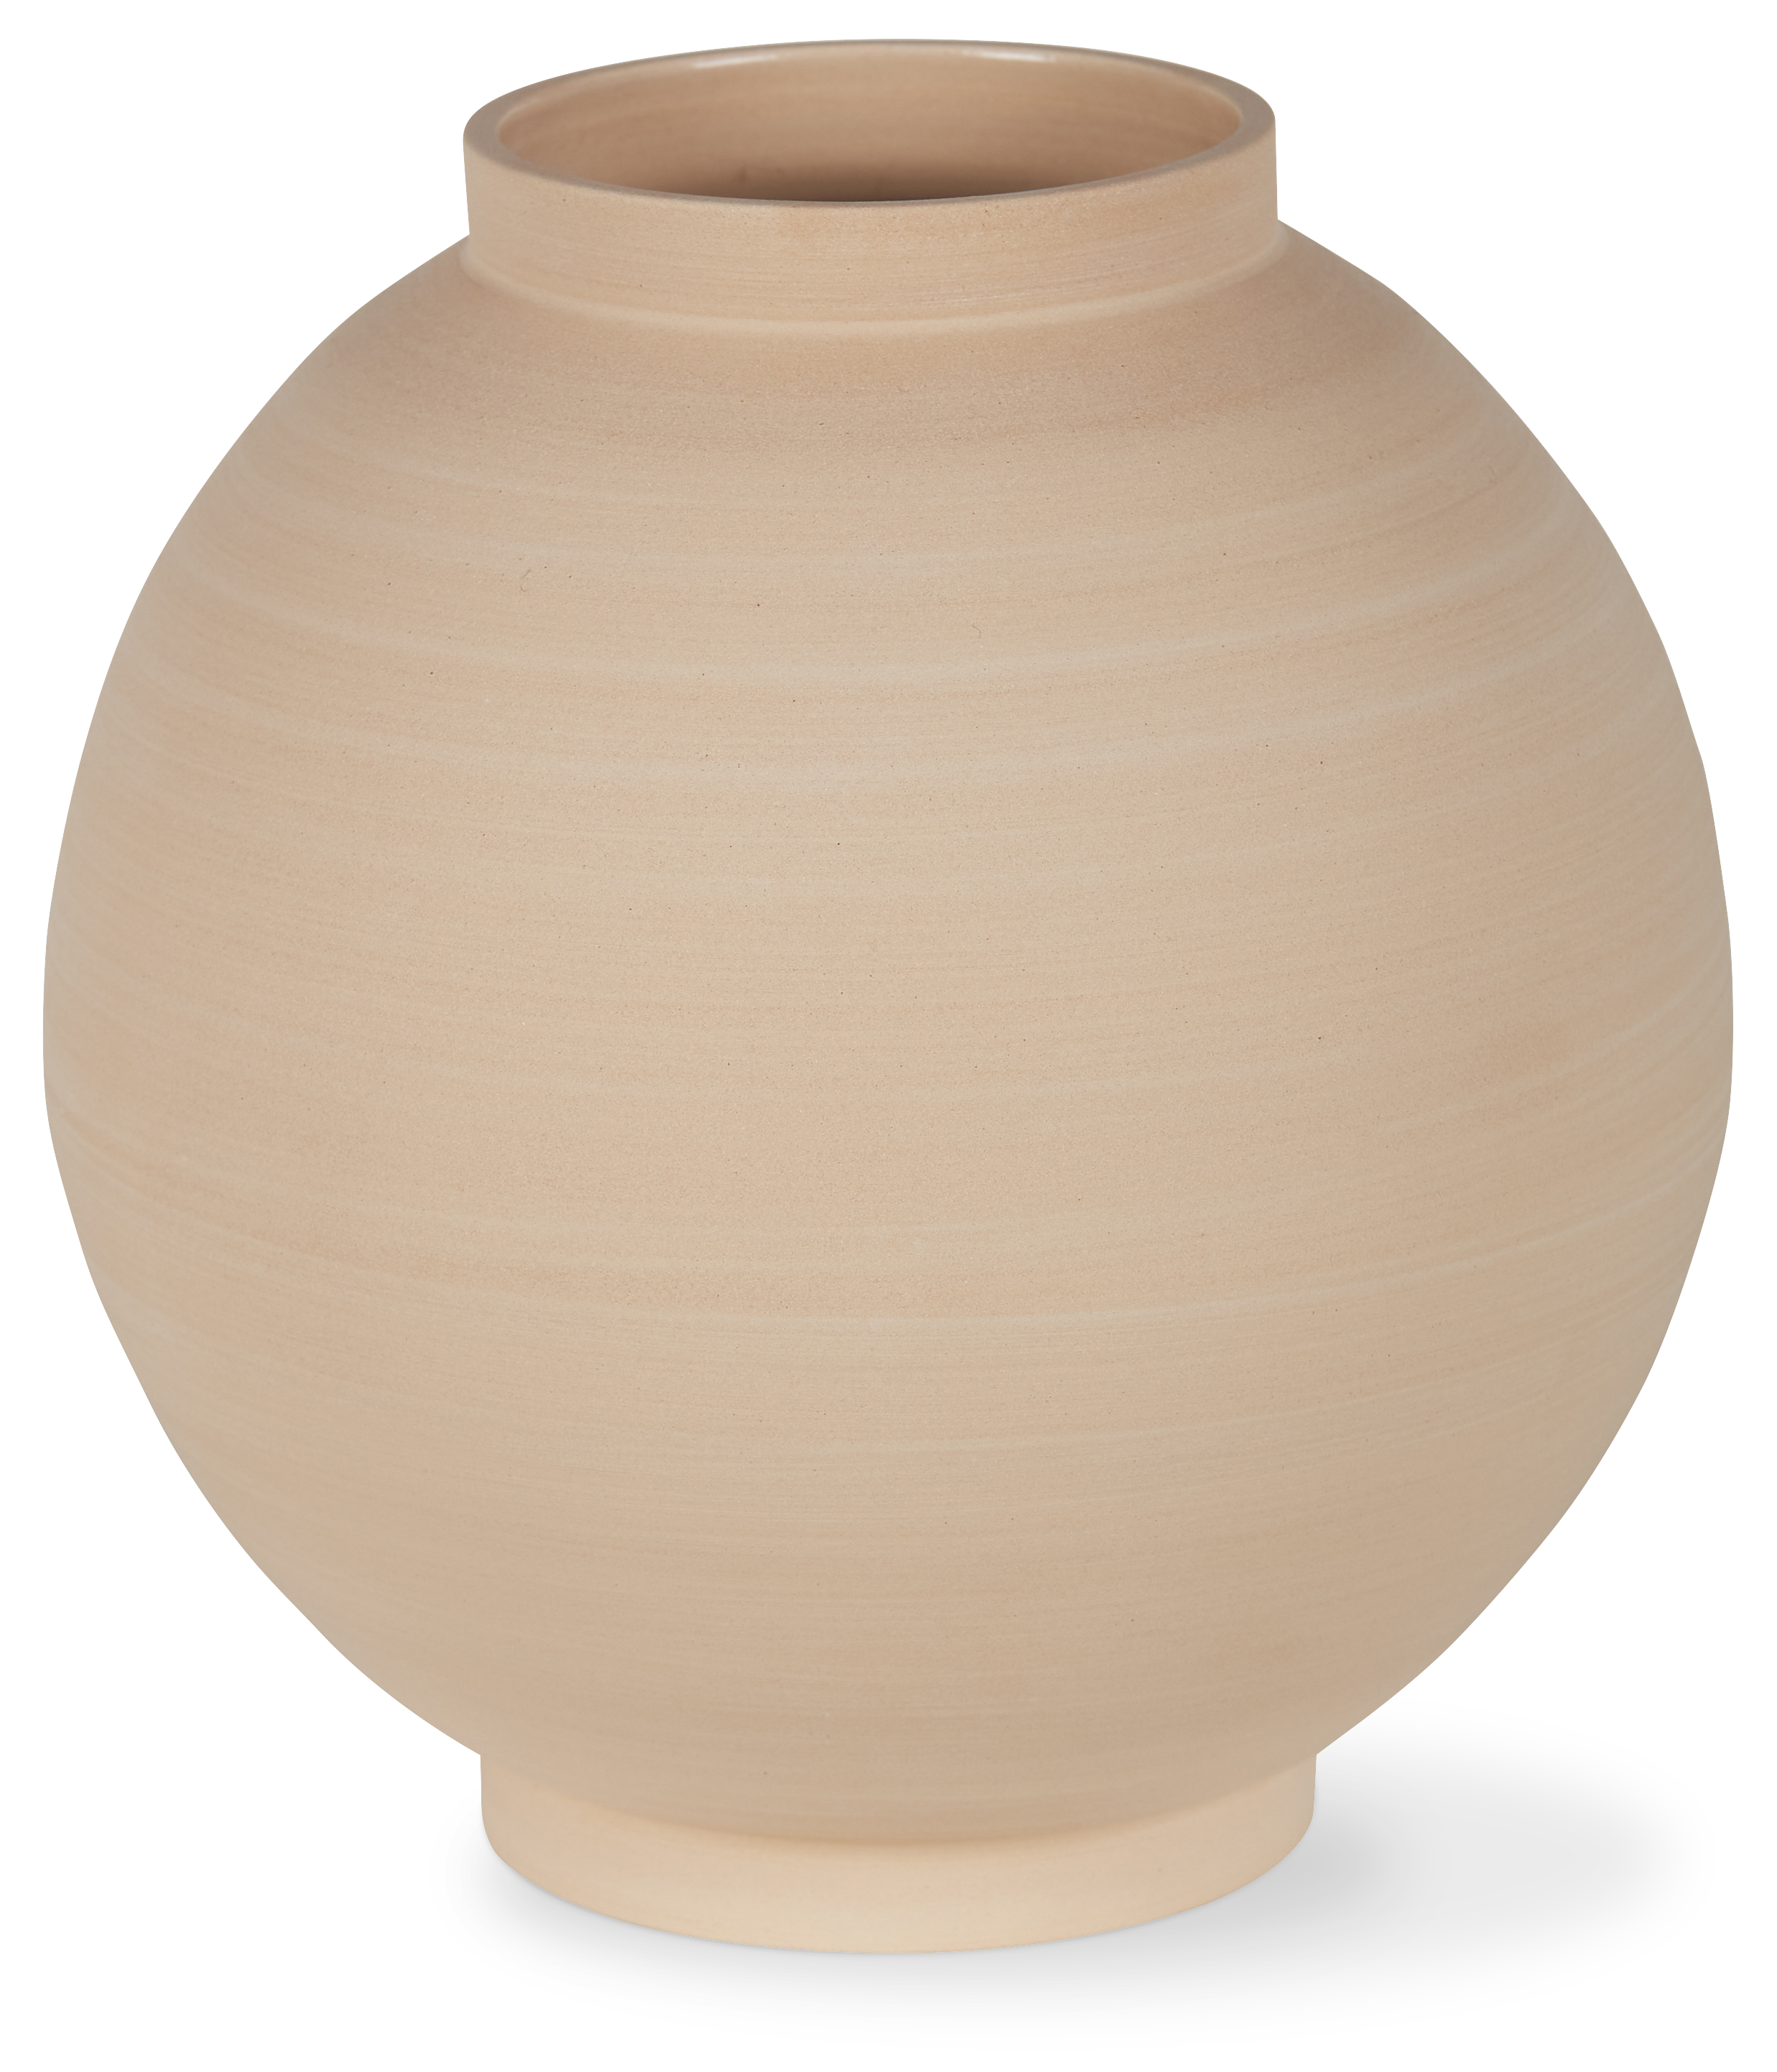 Clay ball vase